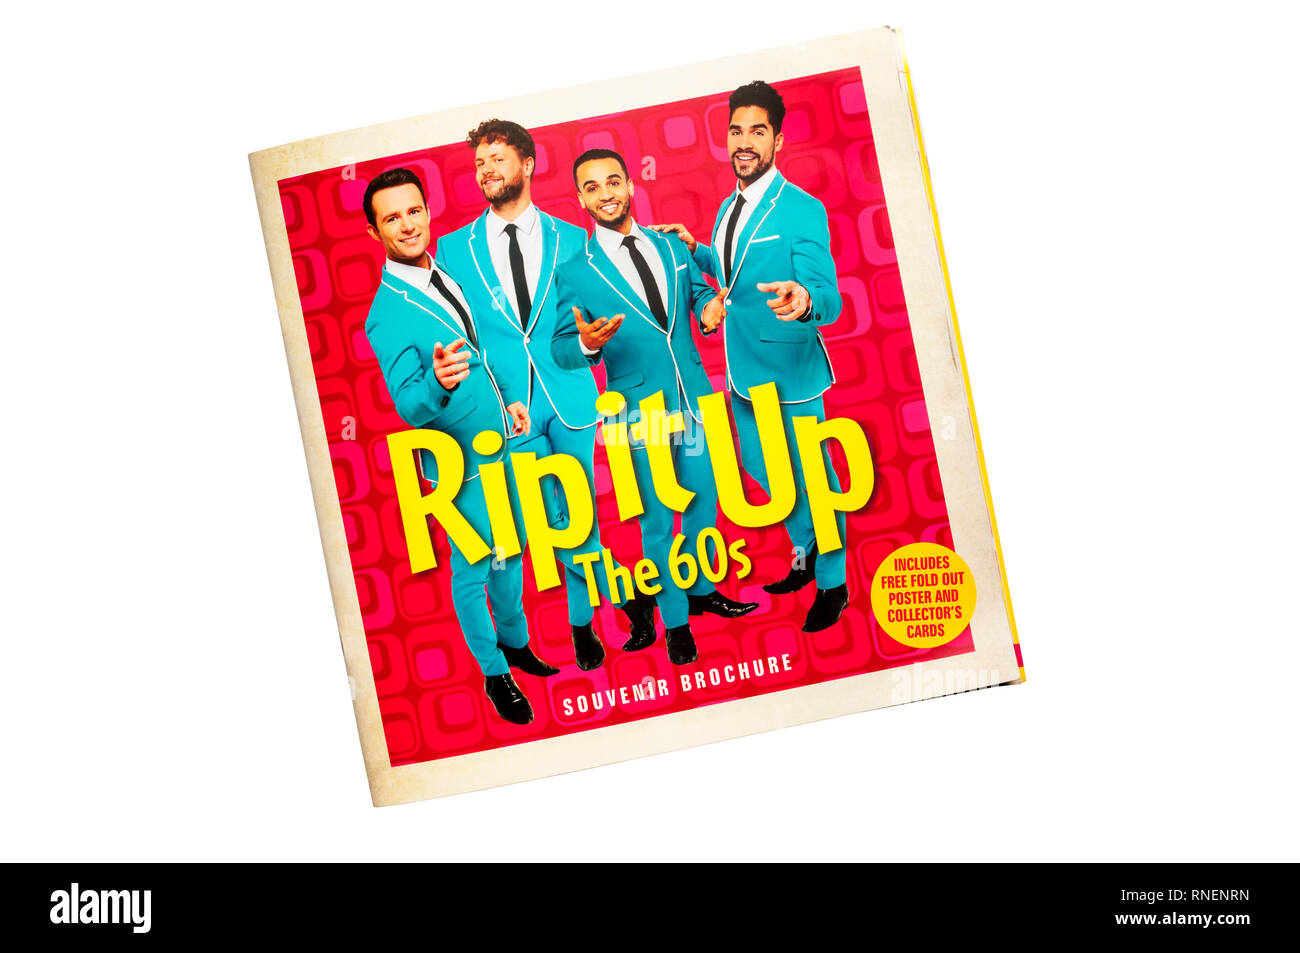 Souvenir Broschüre für 2019 Produktion von Rip It Up 60 s im Garrick Theatre. Mit Tanz und Musik aus den 60er Jahren. Stockfoto